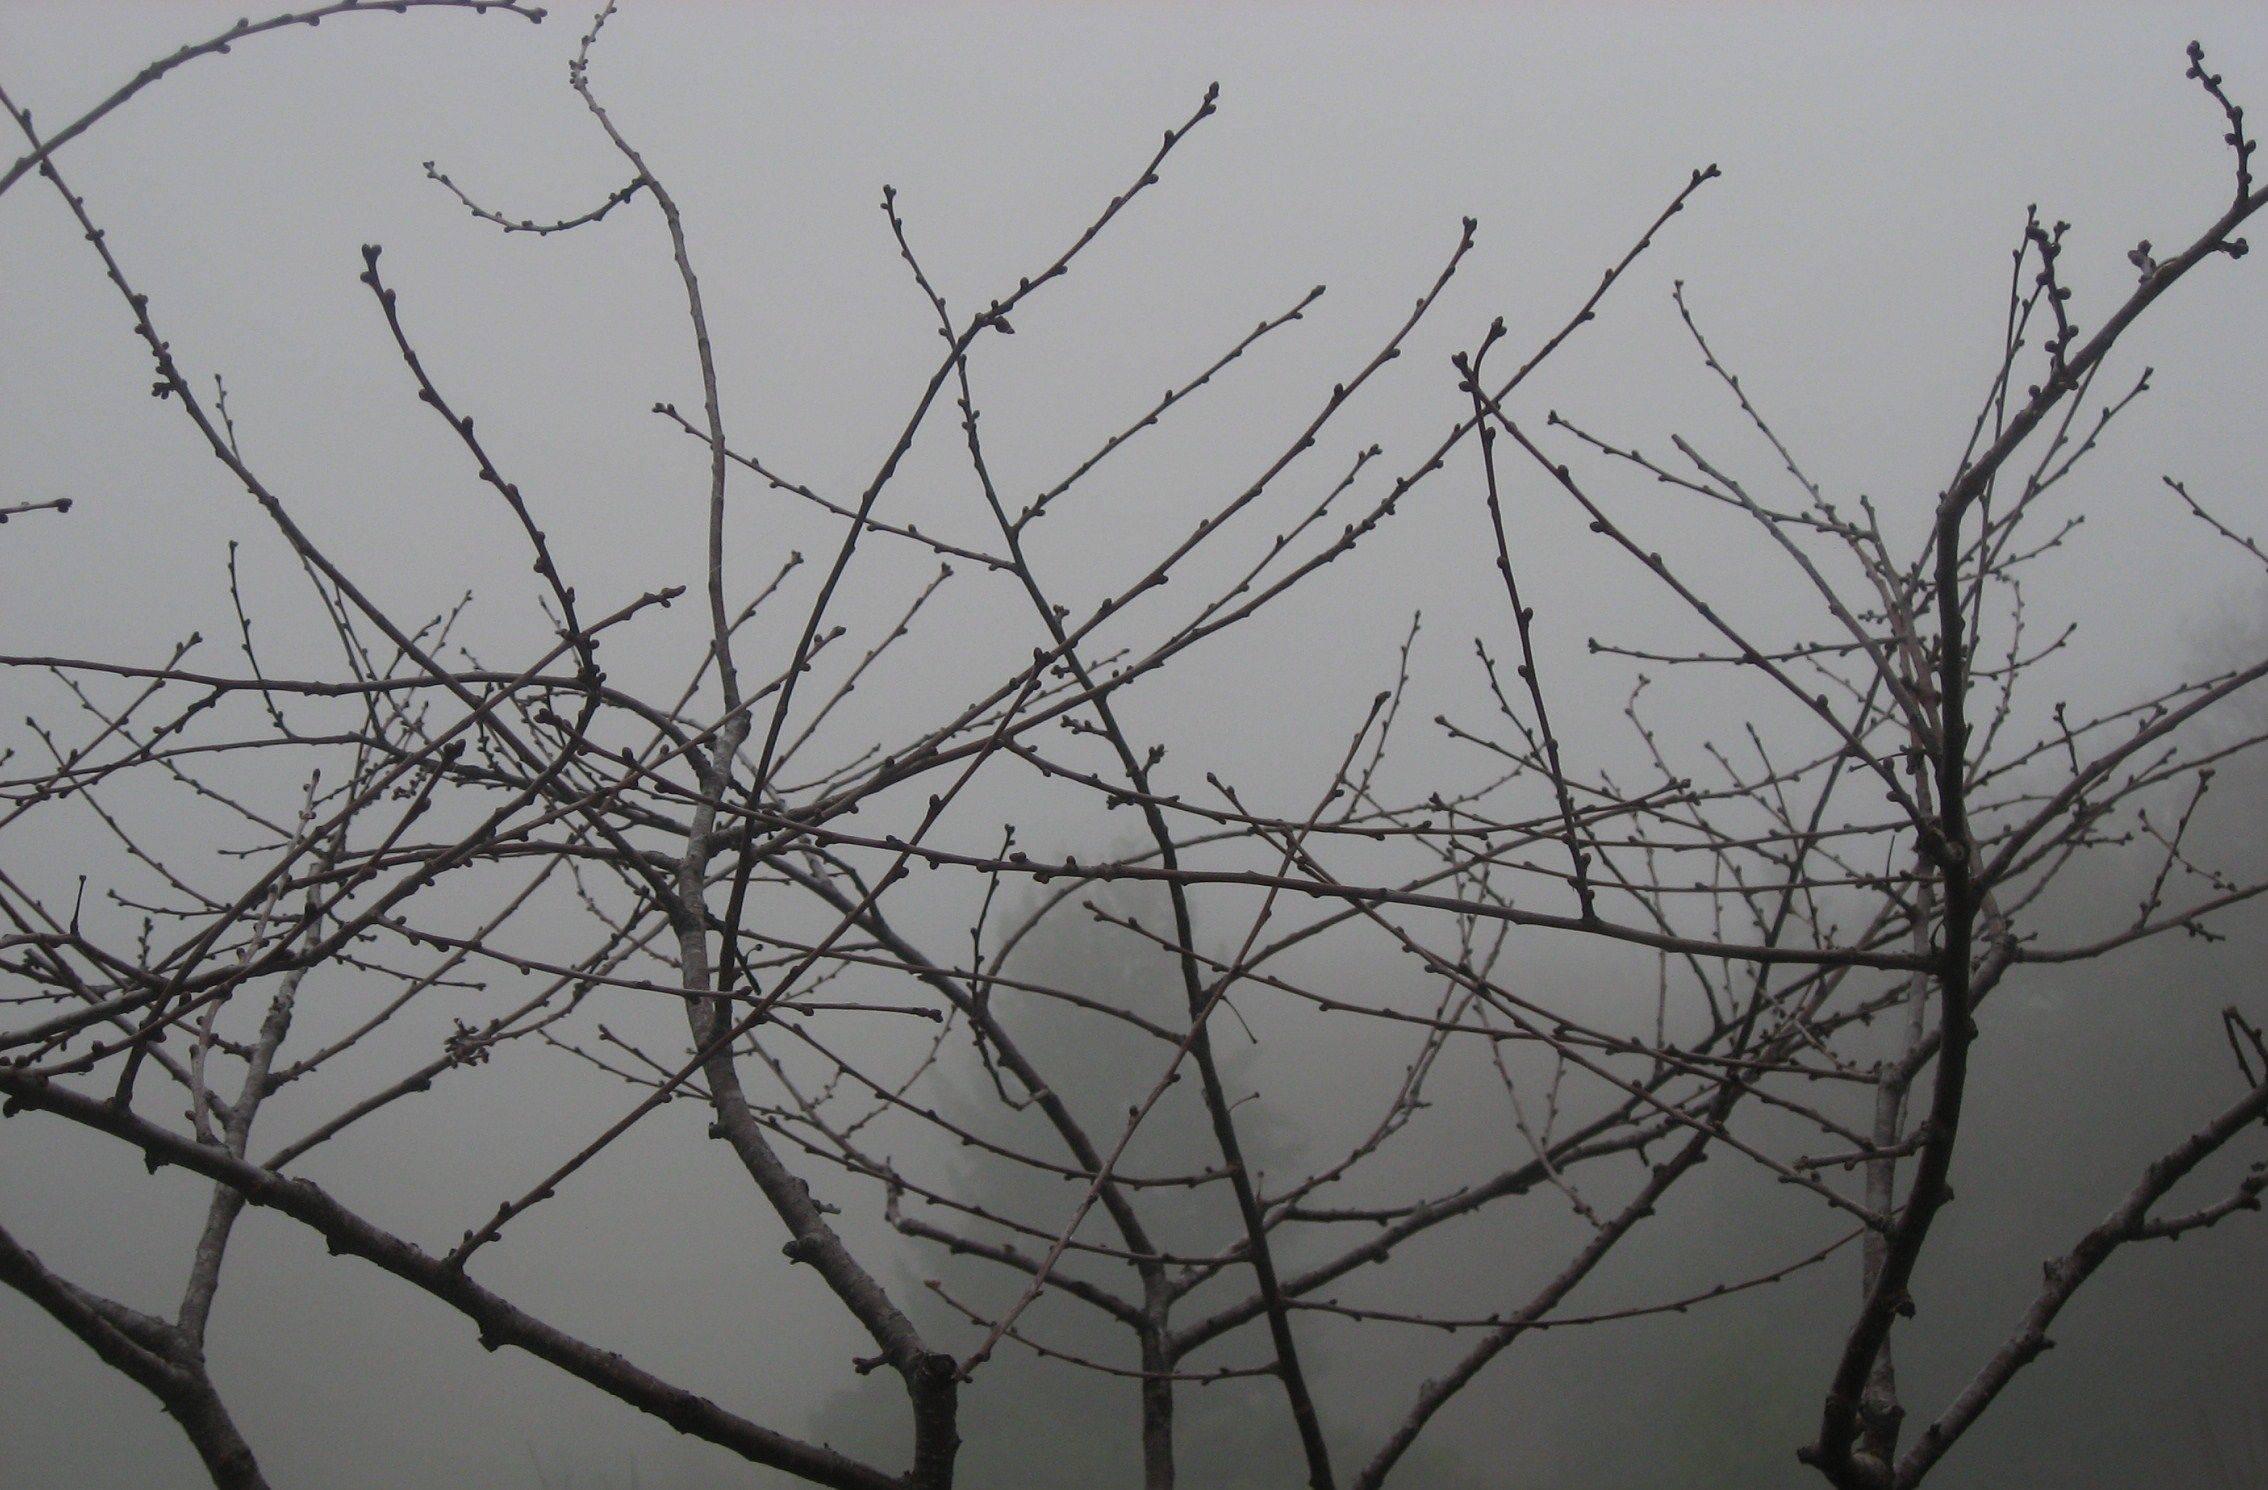 Gaétan Caron Landscape Photograph – "Morello Cherry in Fog" Mendocino, California